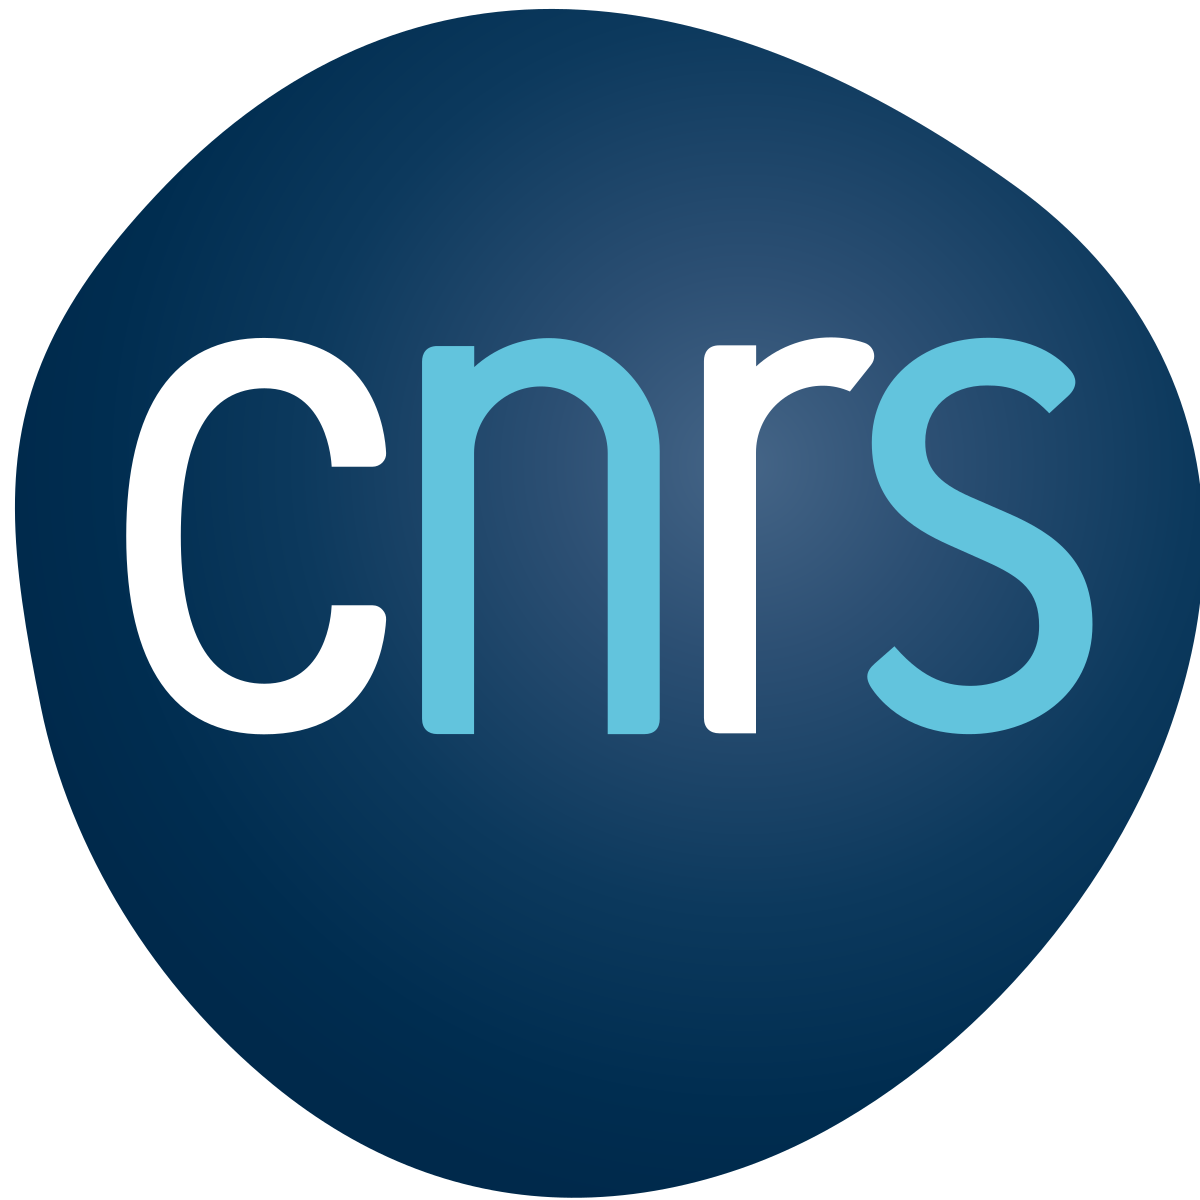 Logo du CNRS